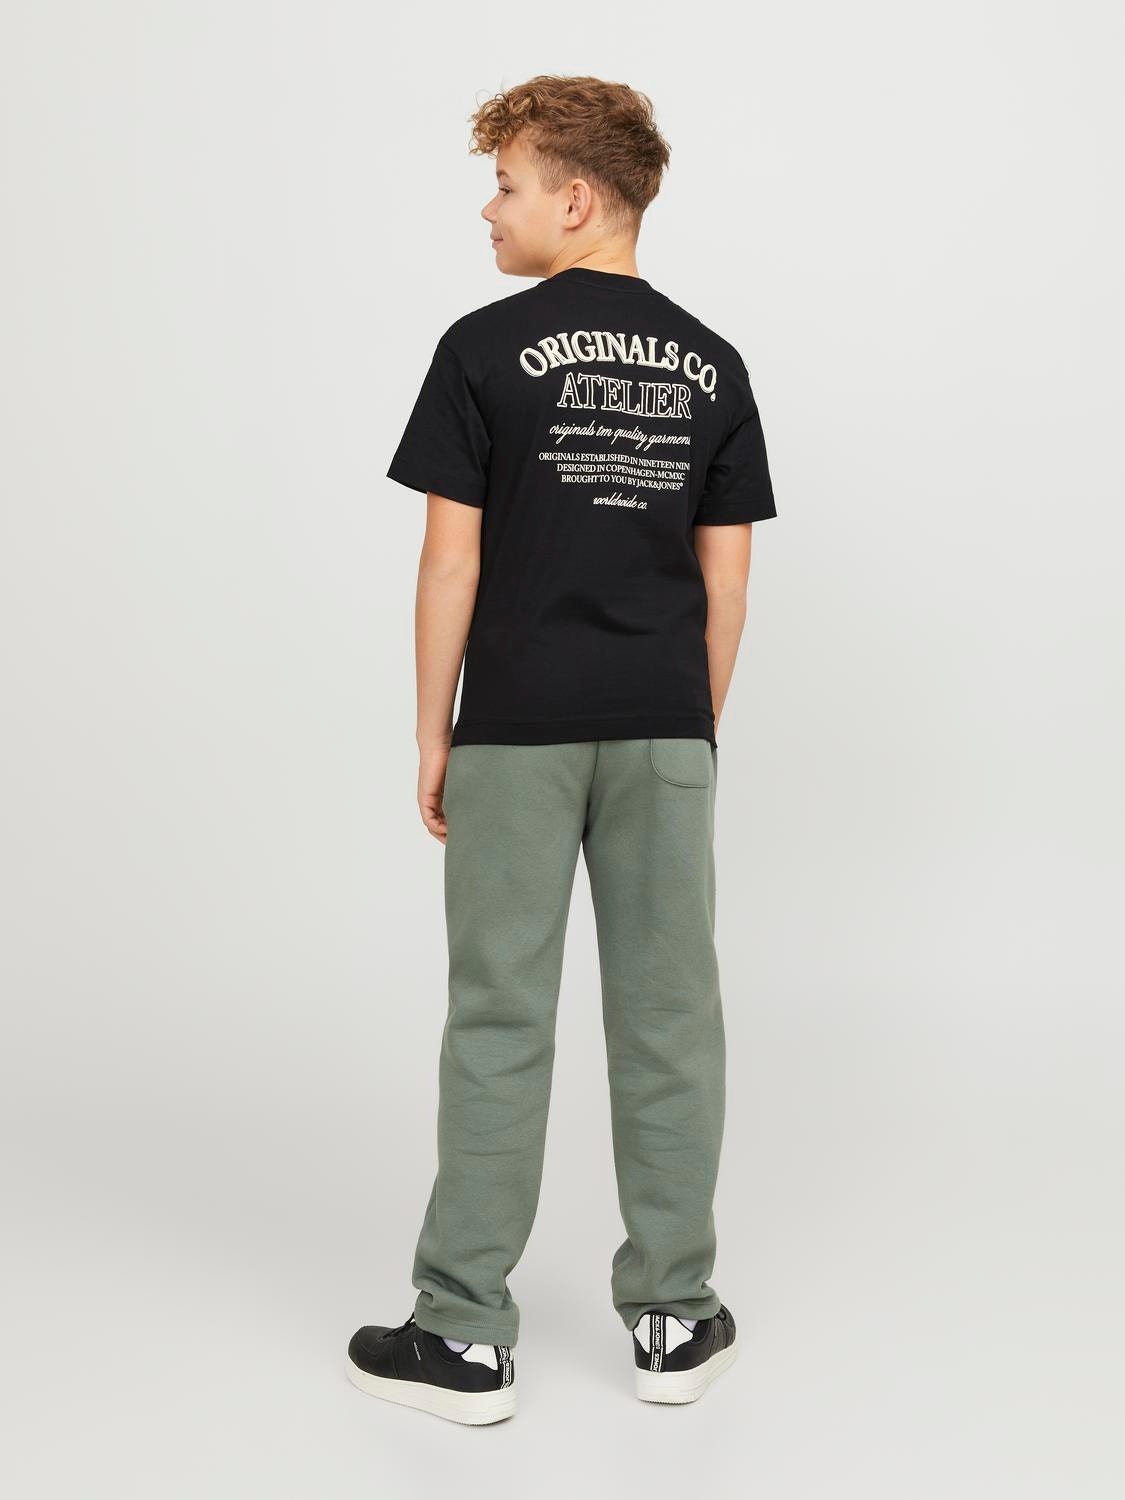 Jack & Jones Bedrukt T-shirt Voor jongens -Black - 12253968